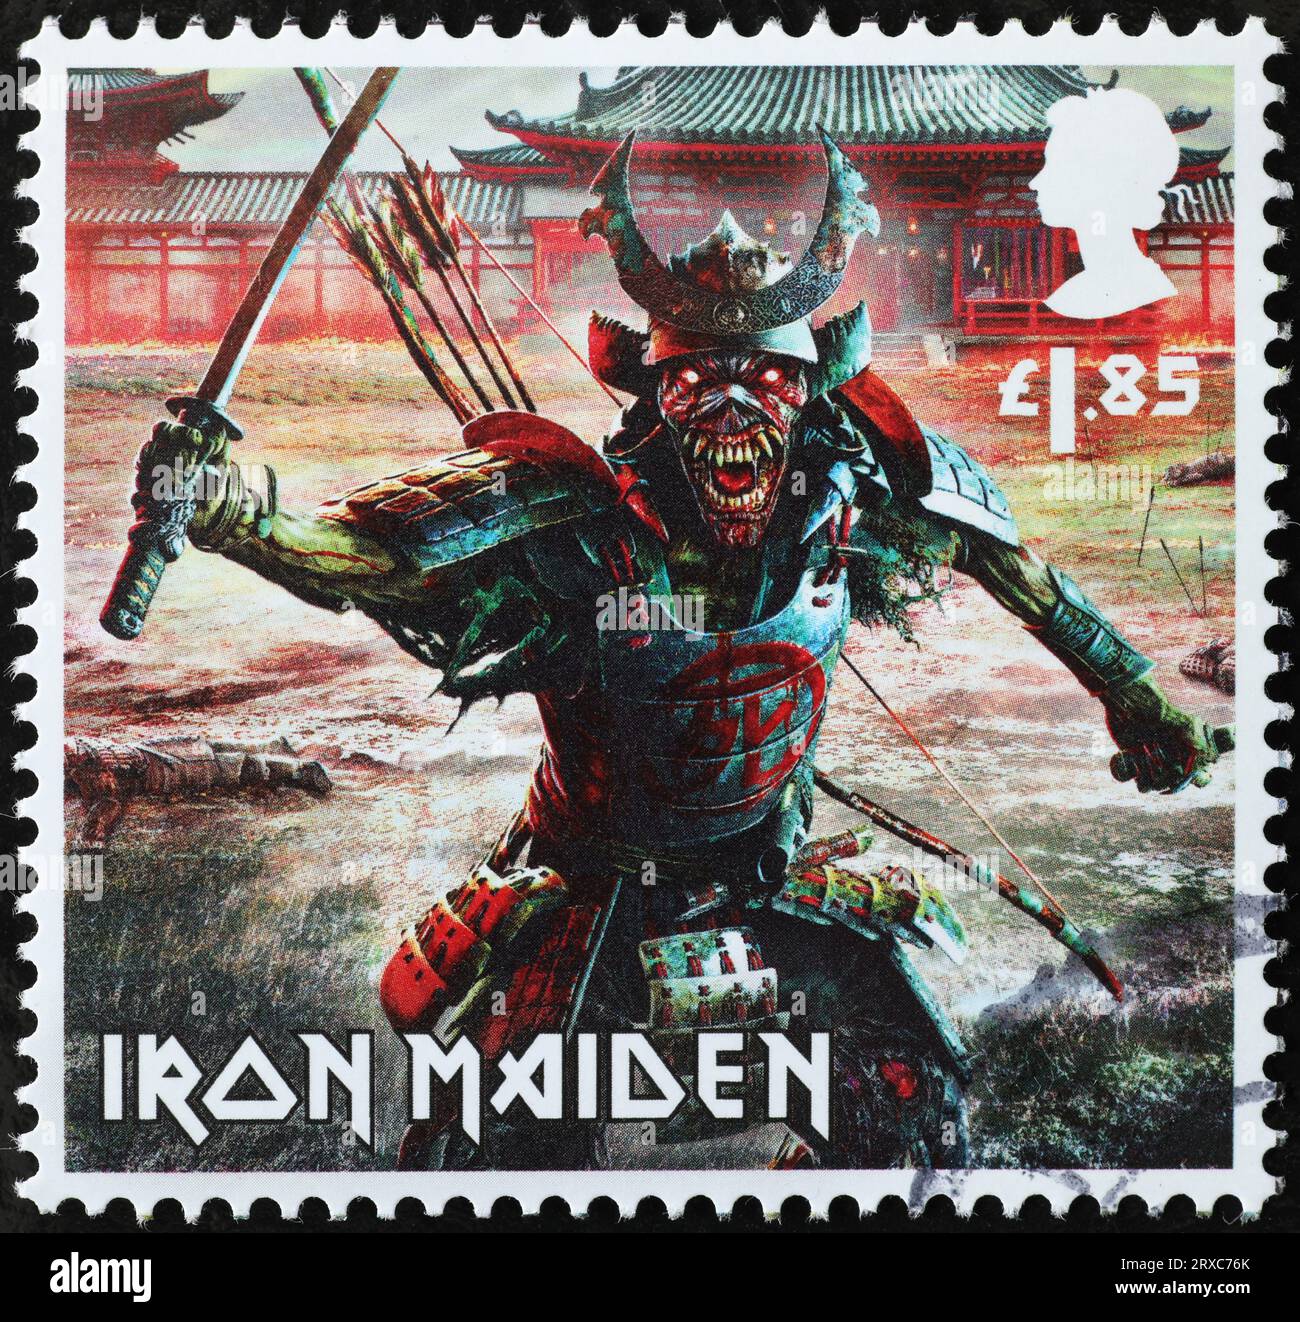 Samurai Zombie of Iron Maiden band on british stamp Stock Photo